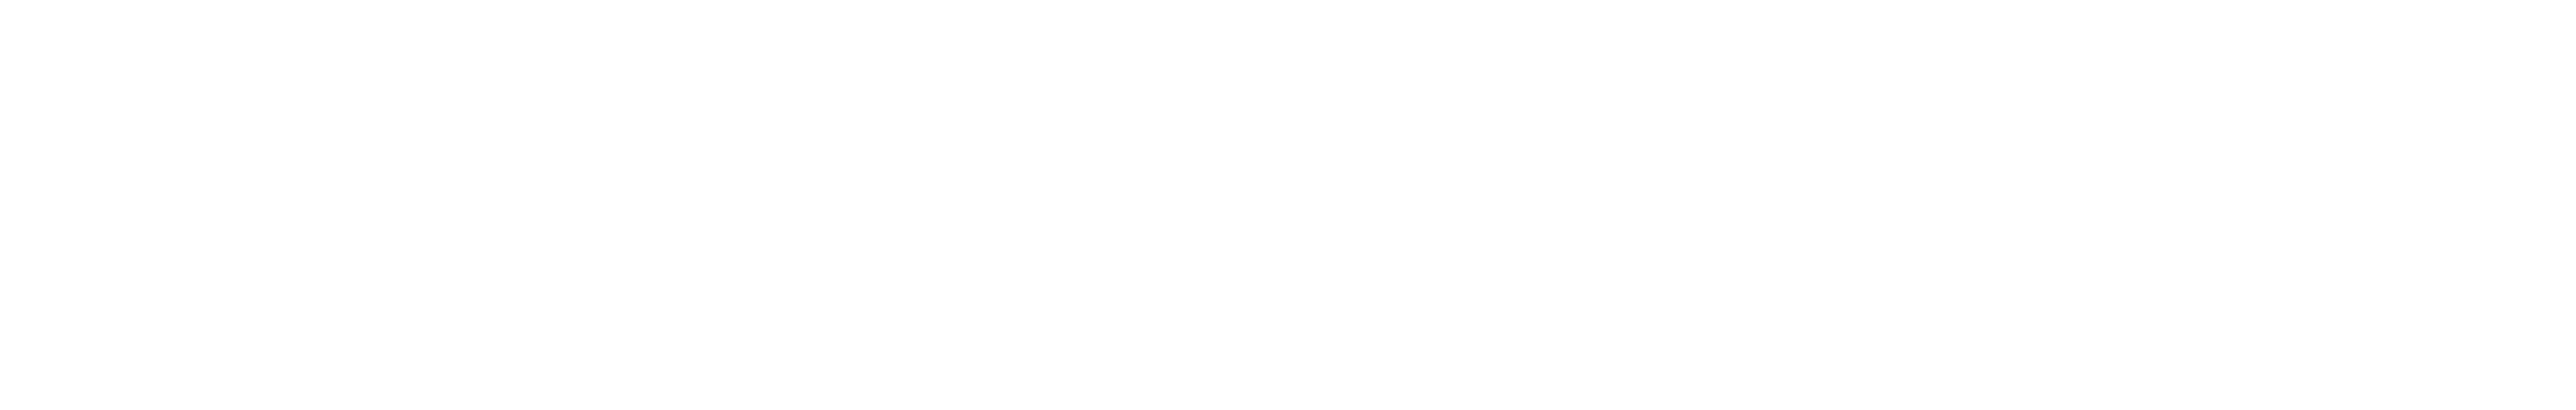 DHZ logo white